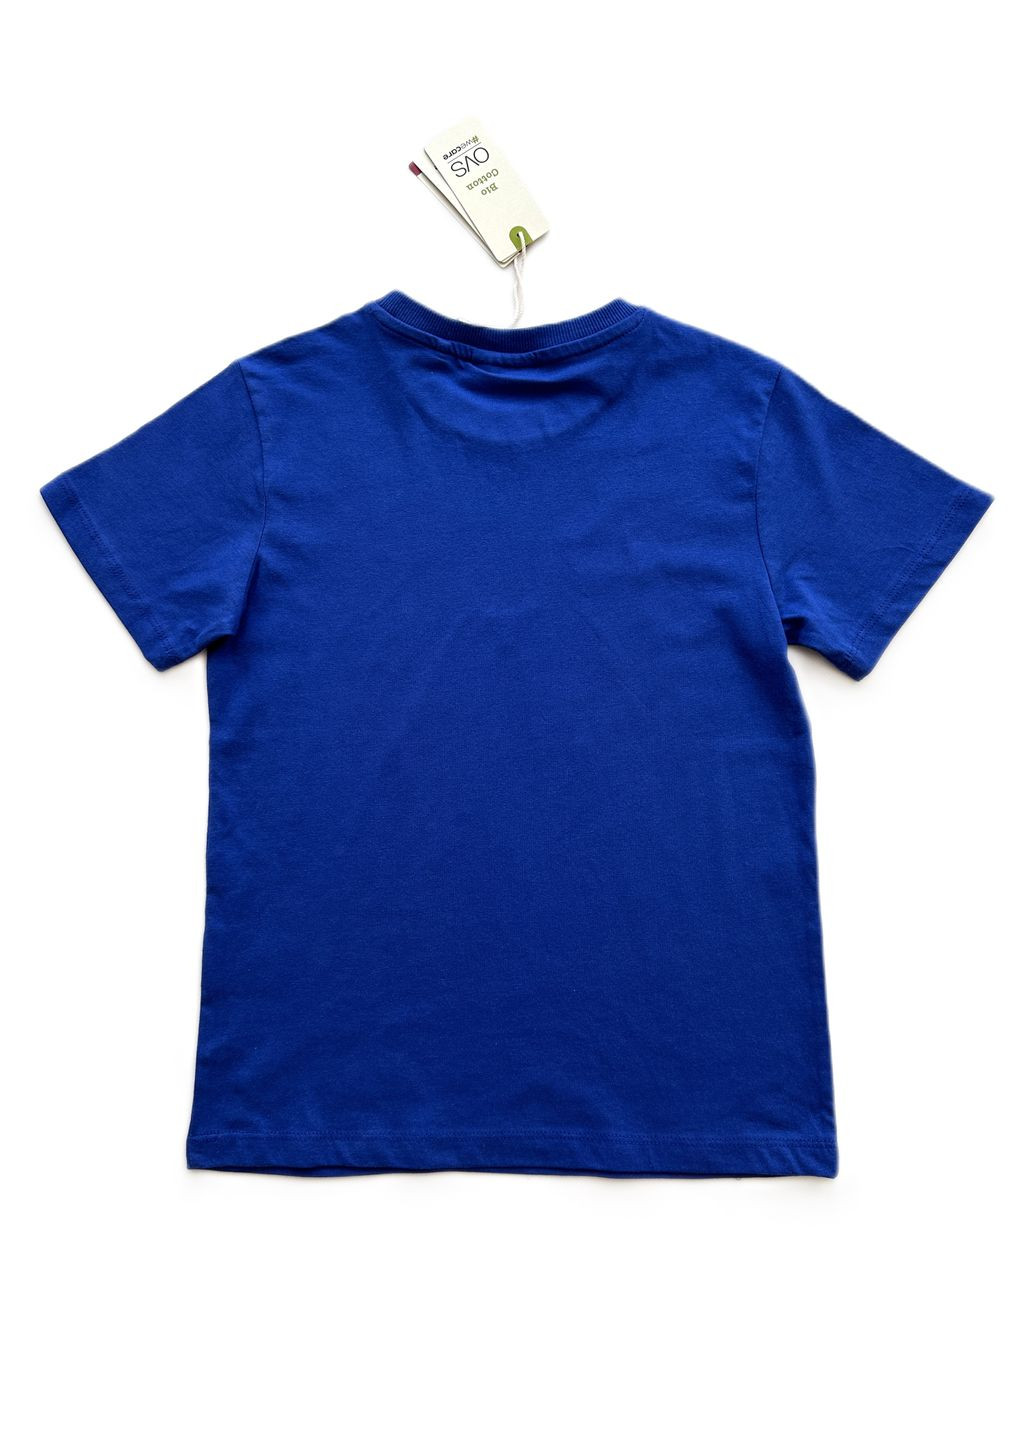 Синяя летняя комплект (2шт) футболки для парня синяя + серая с надписями 2000-40/2000-41 (134 см) OVS